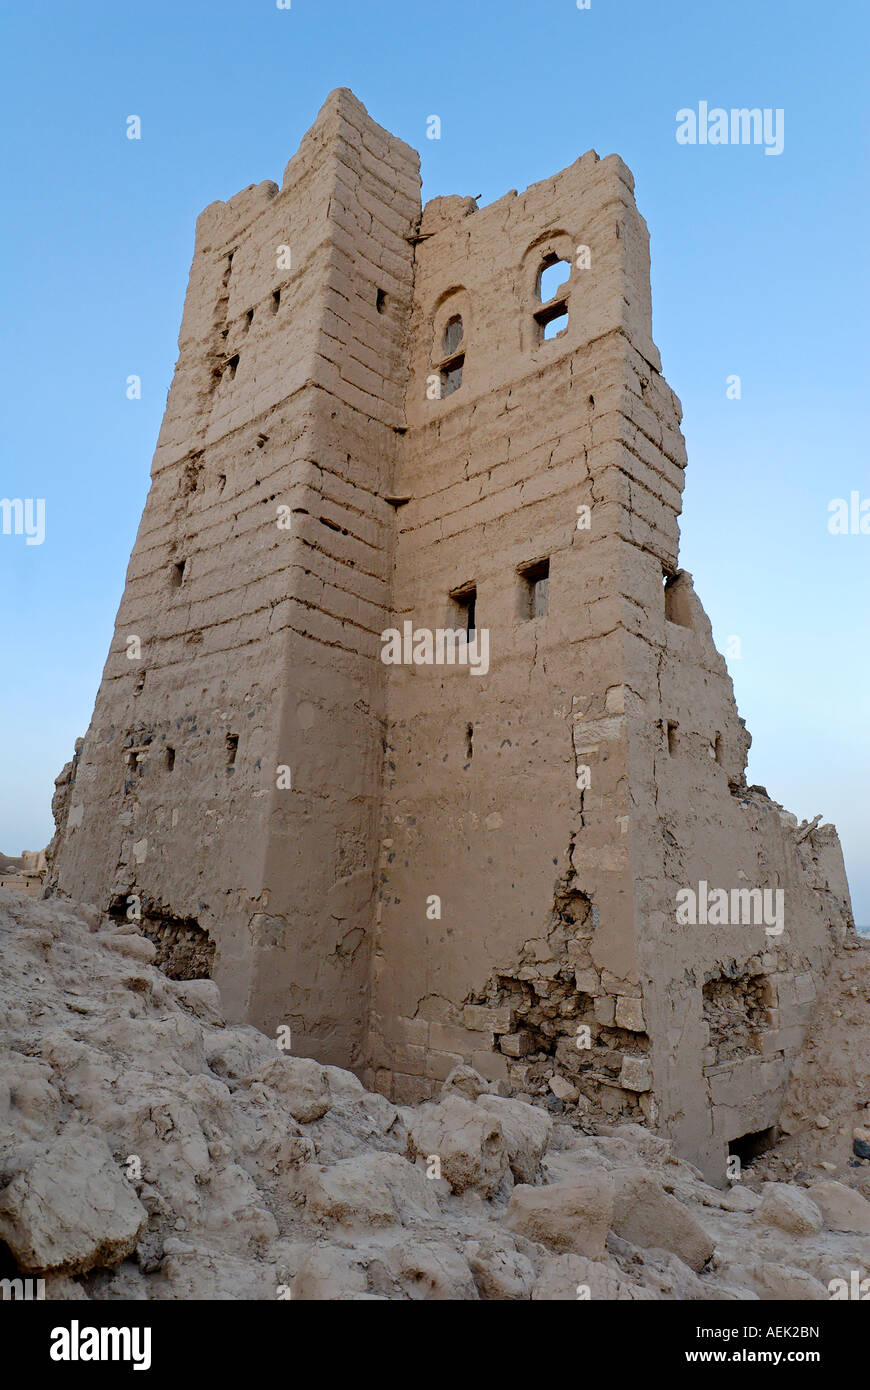 Deserted old town of Marib, Yemen Stock Photo